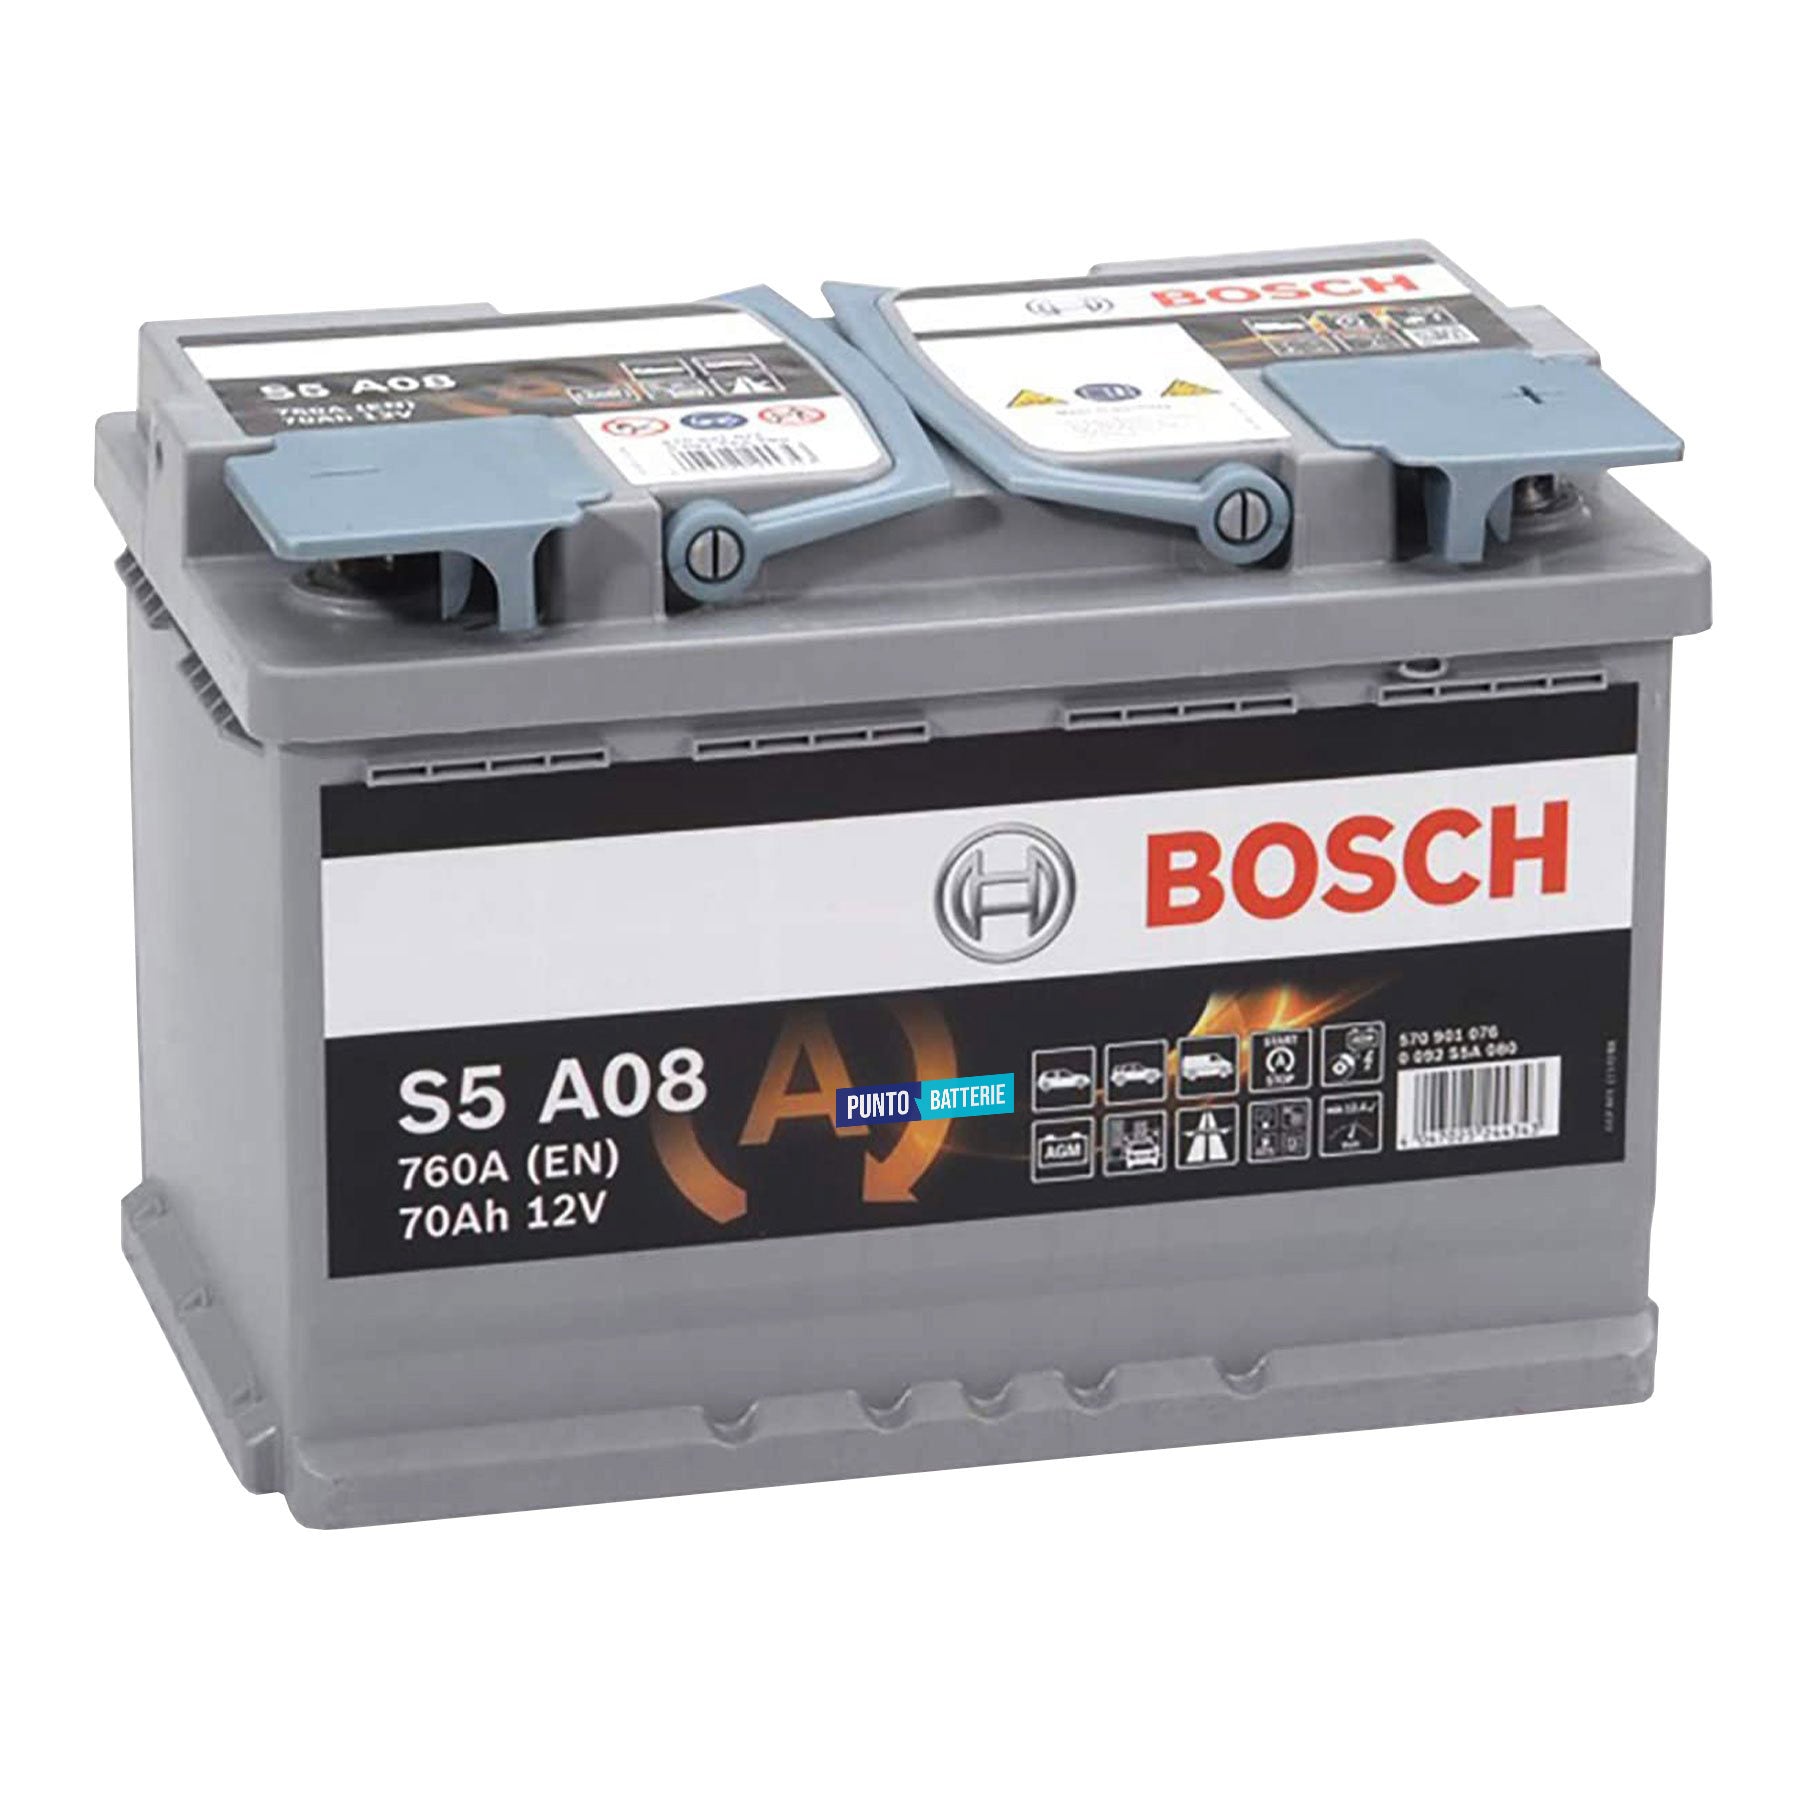 Batteria originale Bosch S5A S5 A08, dimensioni 278 x 175 x 190, polo positivo a destra, 12 volt, 70 amperora, 760 ampere, AGM. Batteria per auto e veicoli leggeri con start e stop.